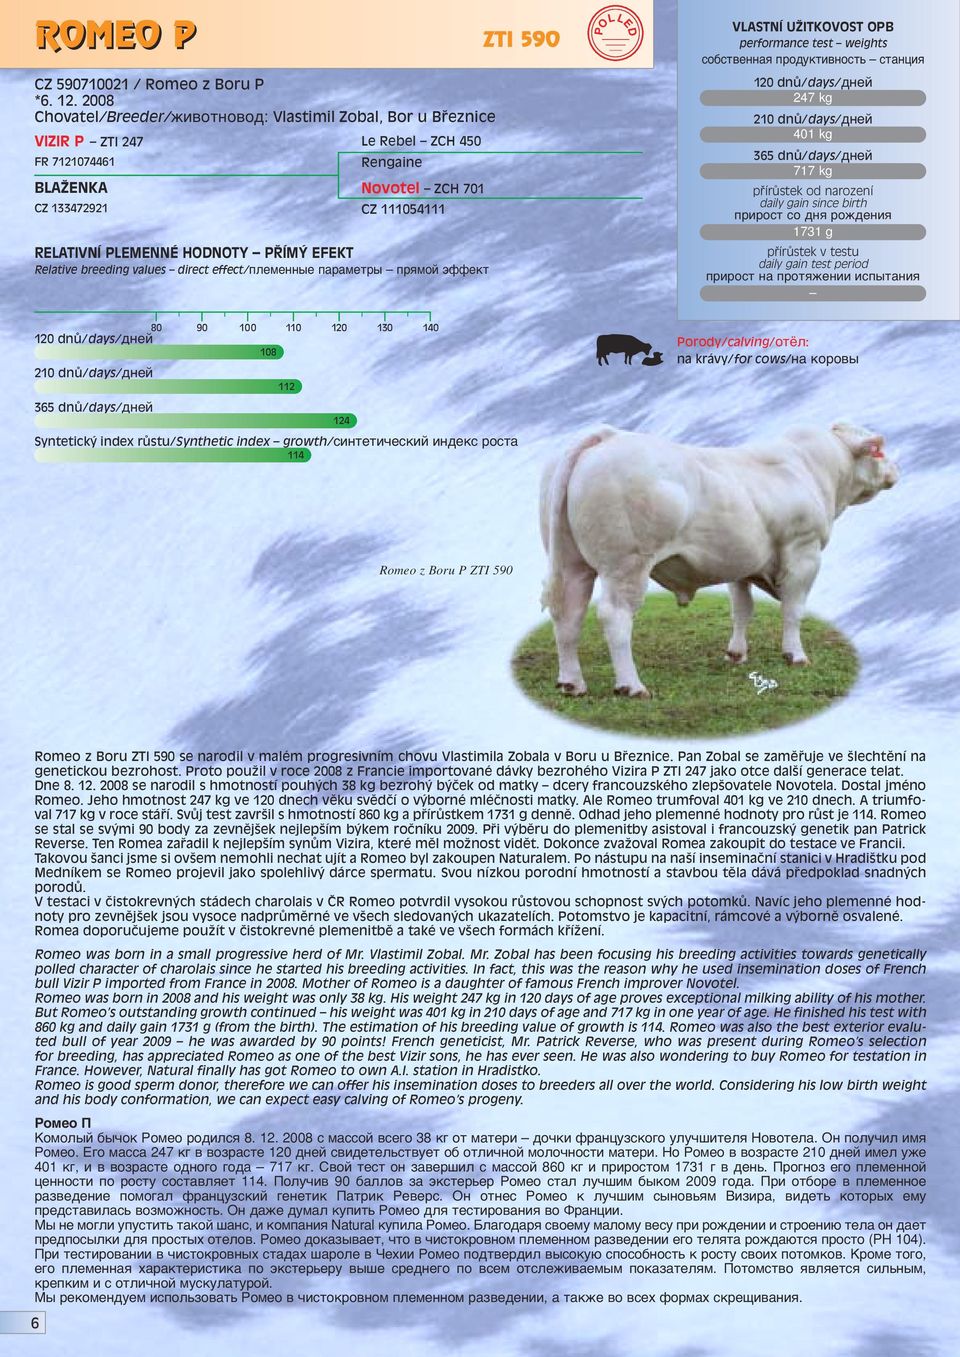 kg 1731 g 108 114 112 124 na krávy/for cows/ì ÍÓappleÓ Romeo z Boru P ZTI 590 Romeo z Boru ZTI 590 se narodil v malém progresivním chovu Vlastimila Zobala v Boru u Bfieznice.